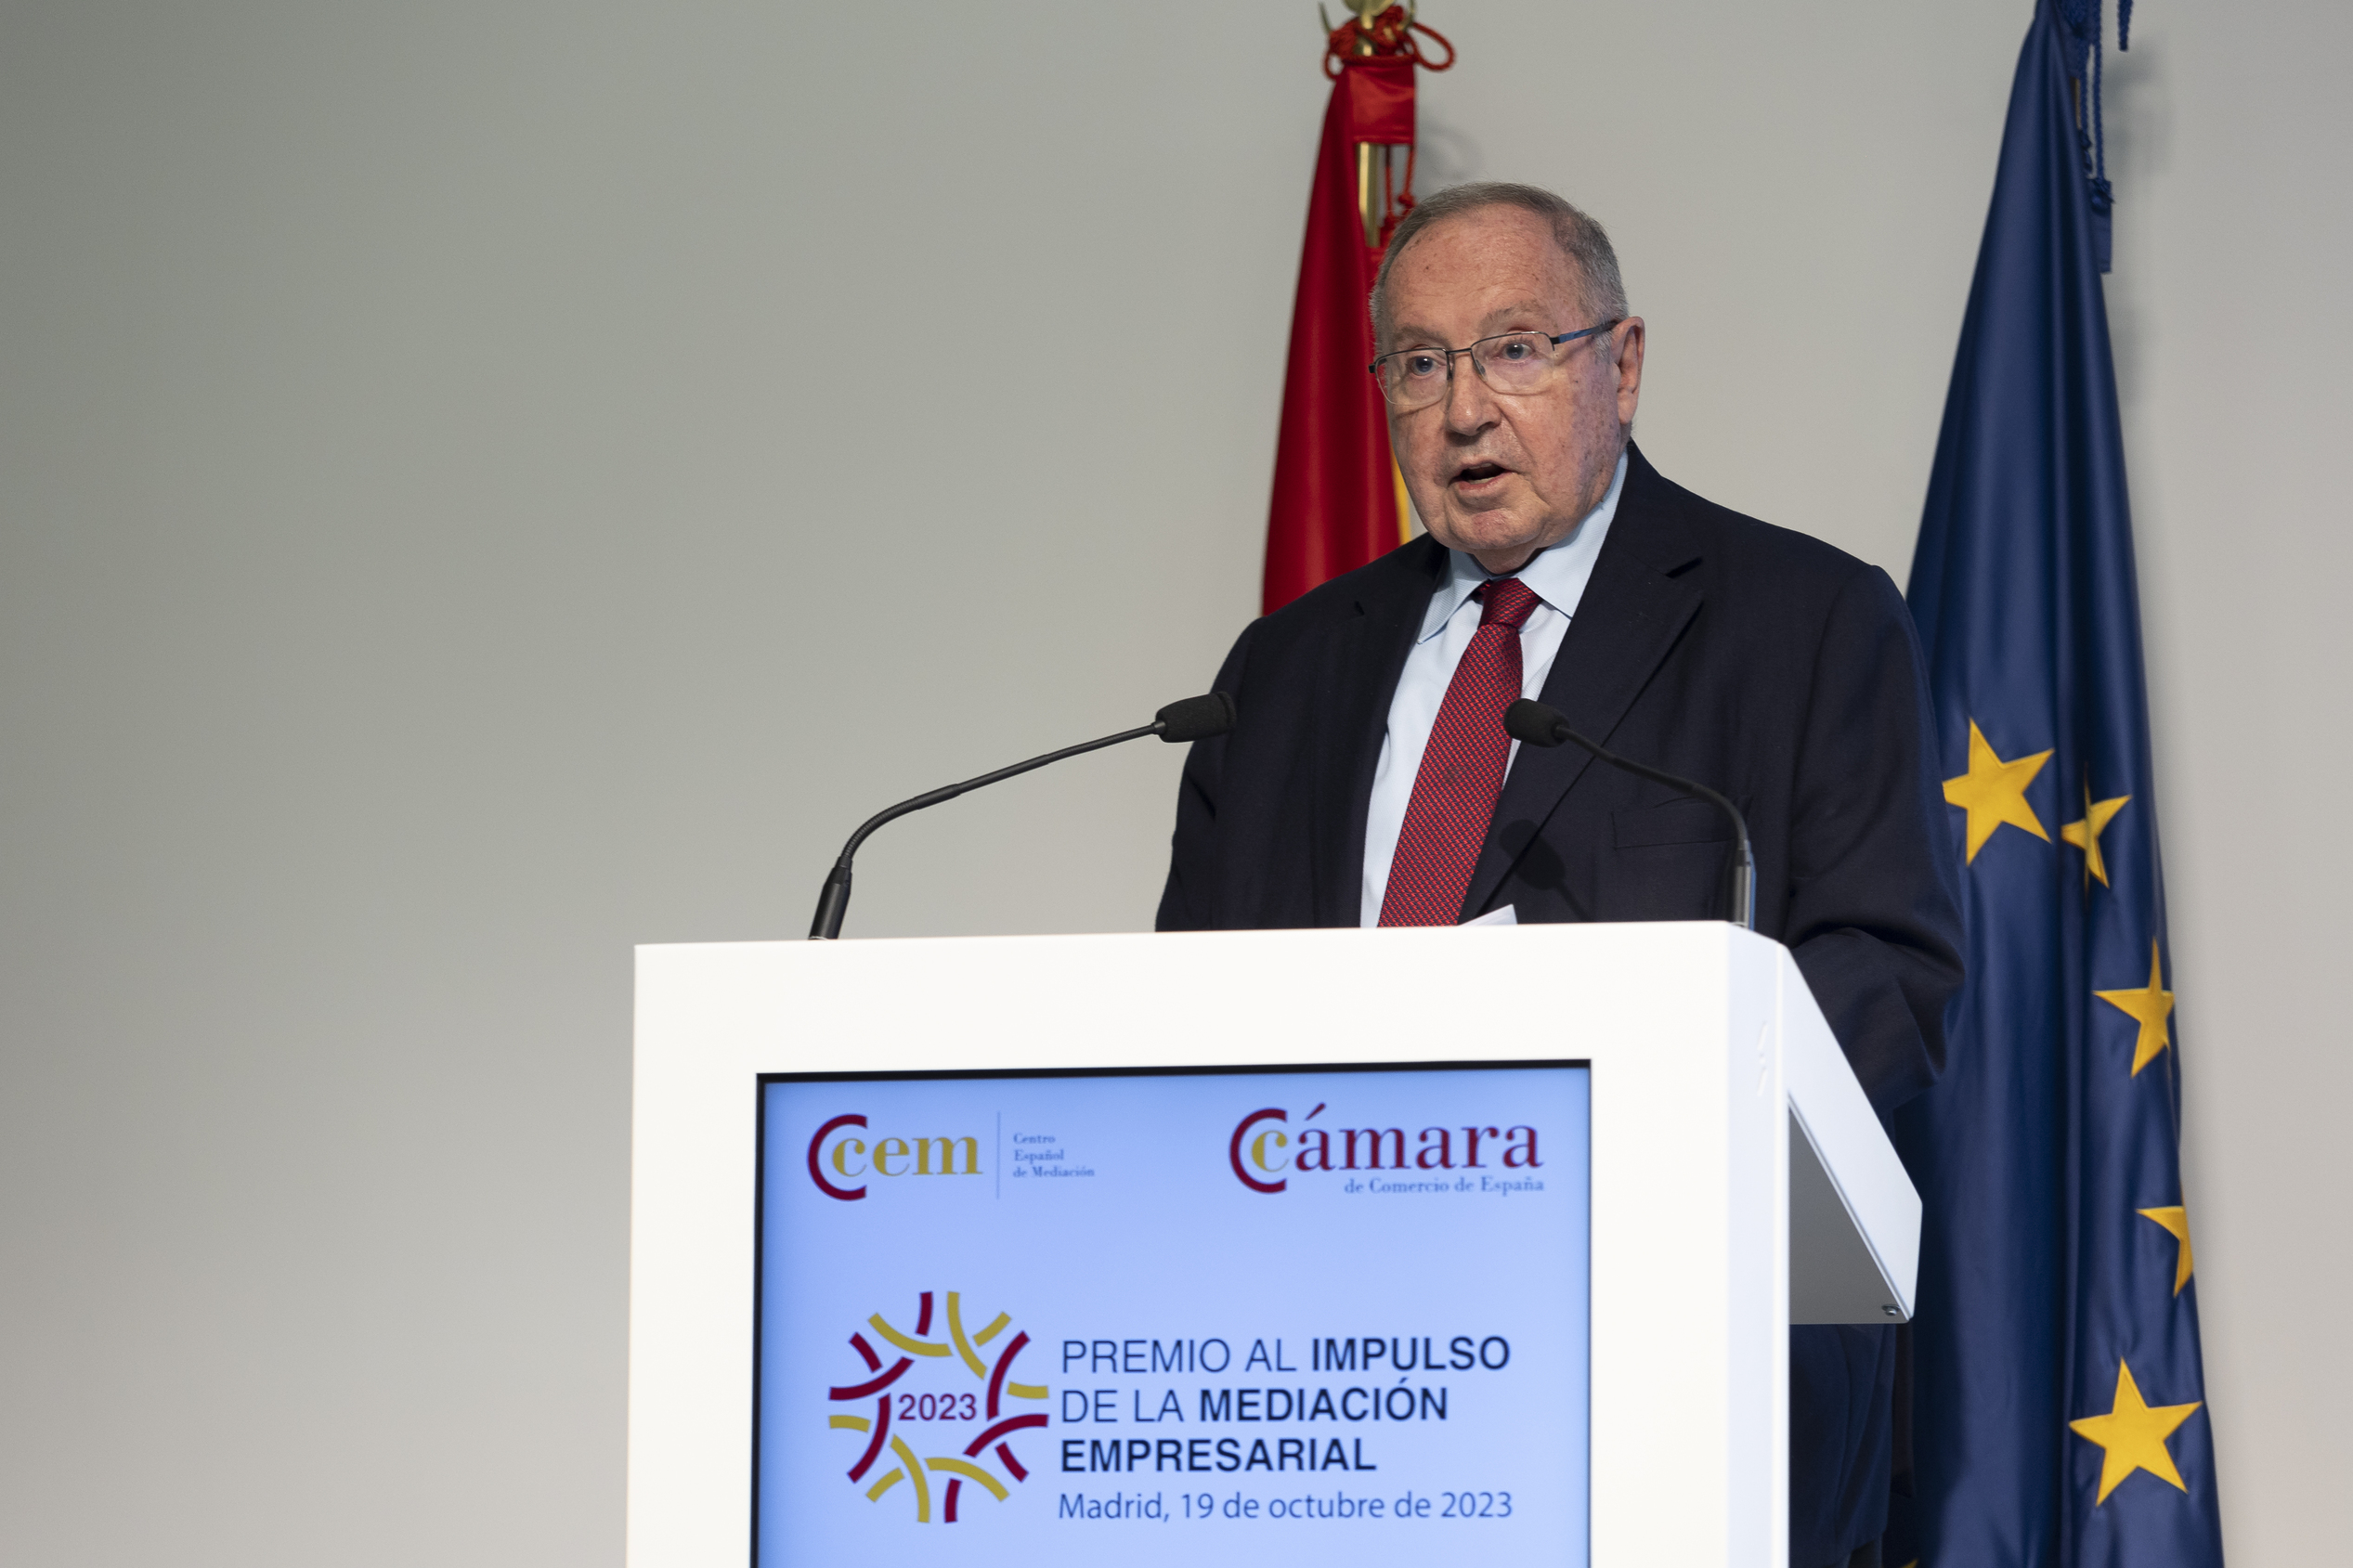 José Luis Bonet, presidente de la Cámara de Comercio de España